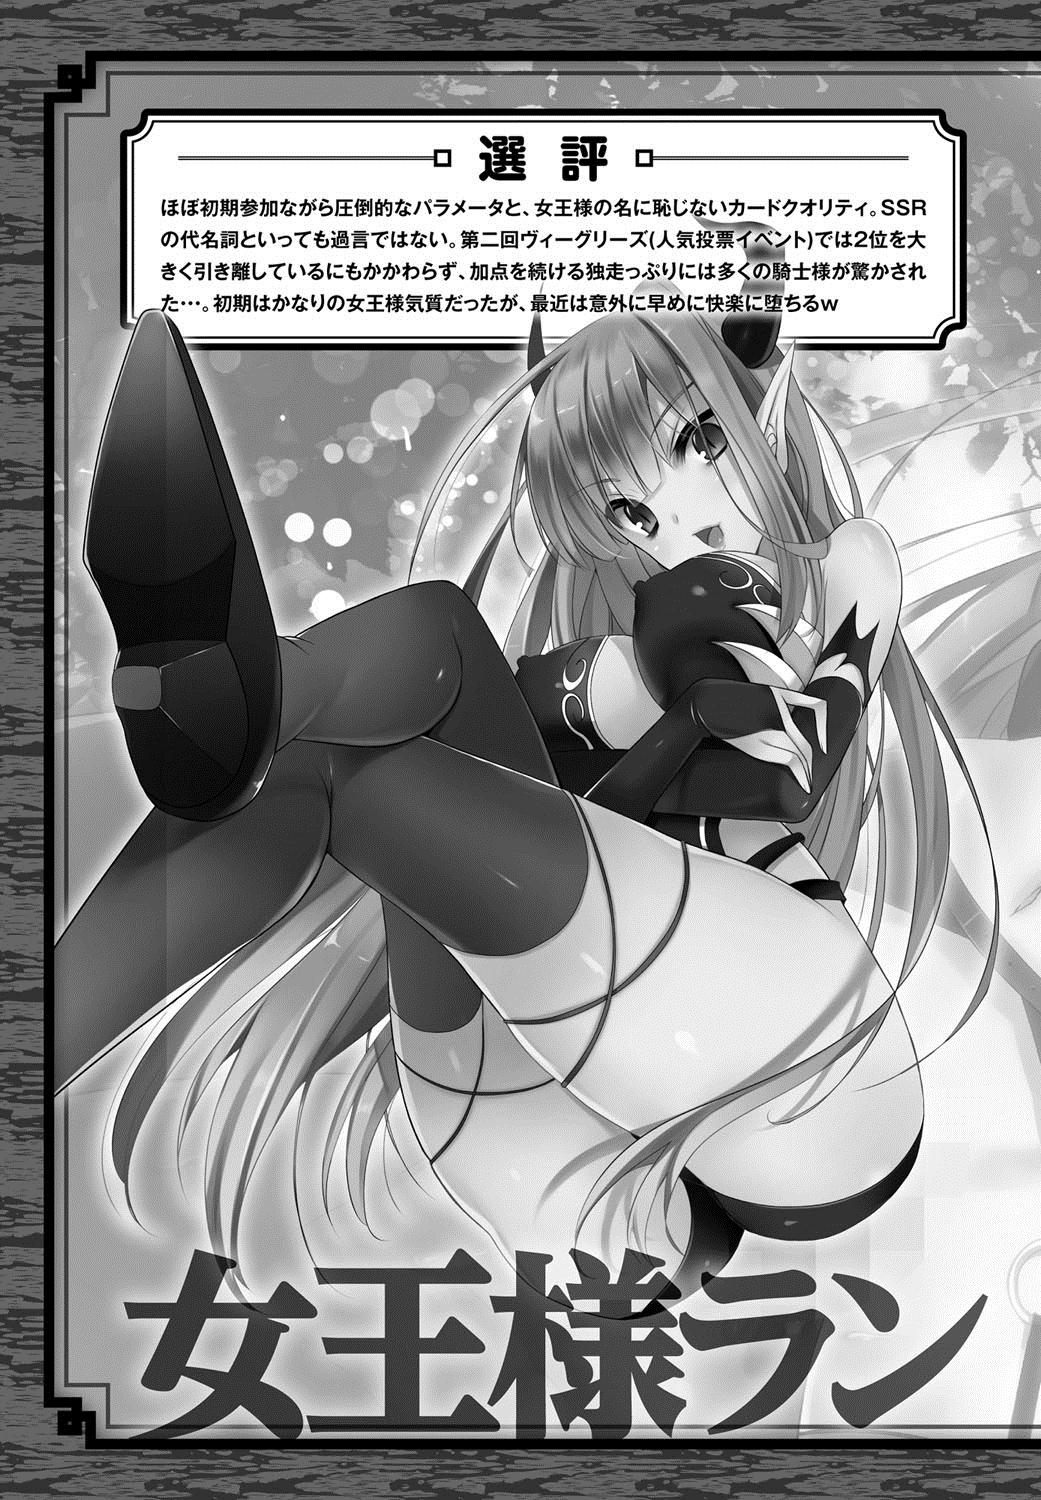 [Anthology] Lord of Valkyrie Adult - Comic Anthology R18 Handakara Saigomade... Mou, Kishi-sama no Ecchi♪ 109